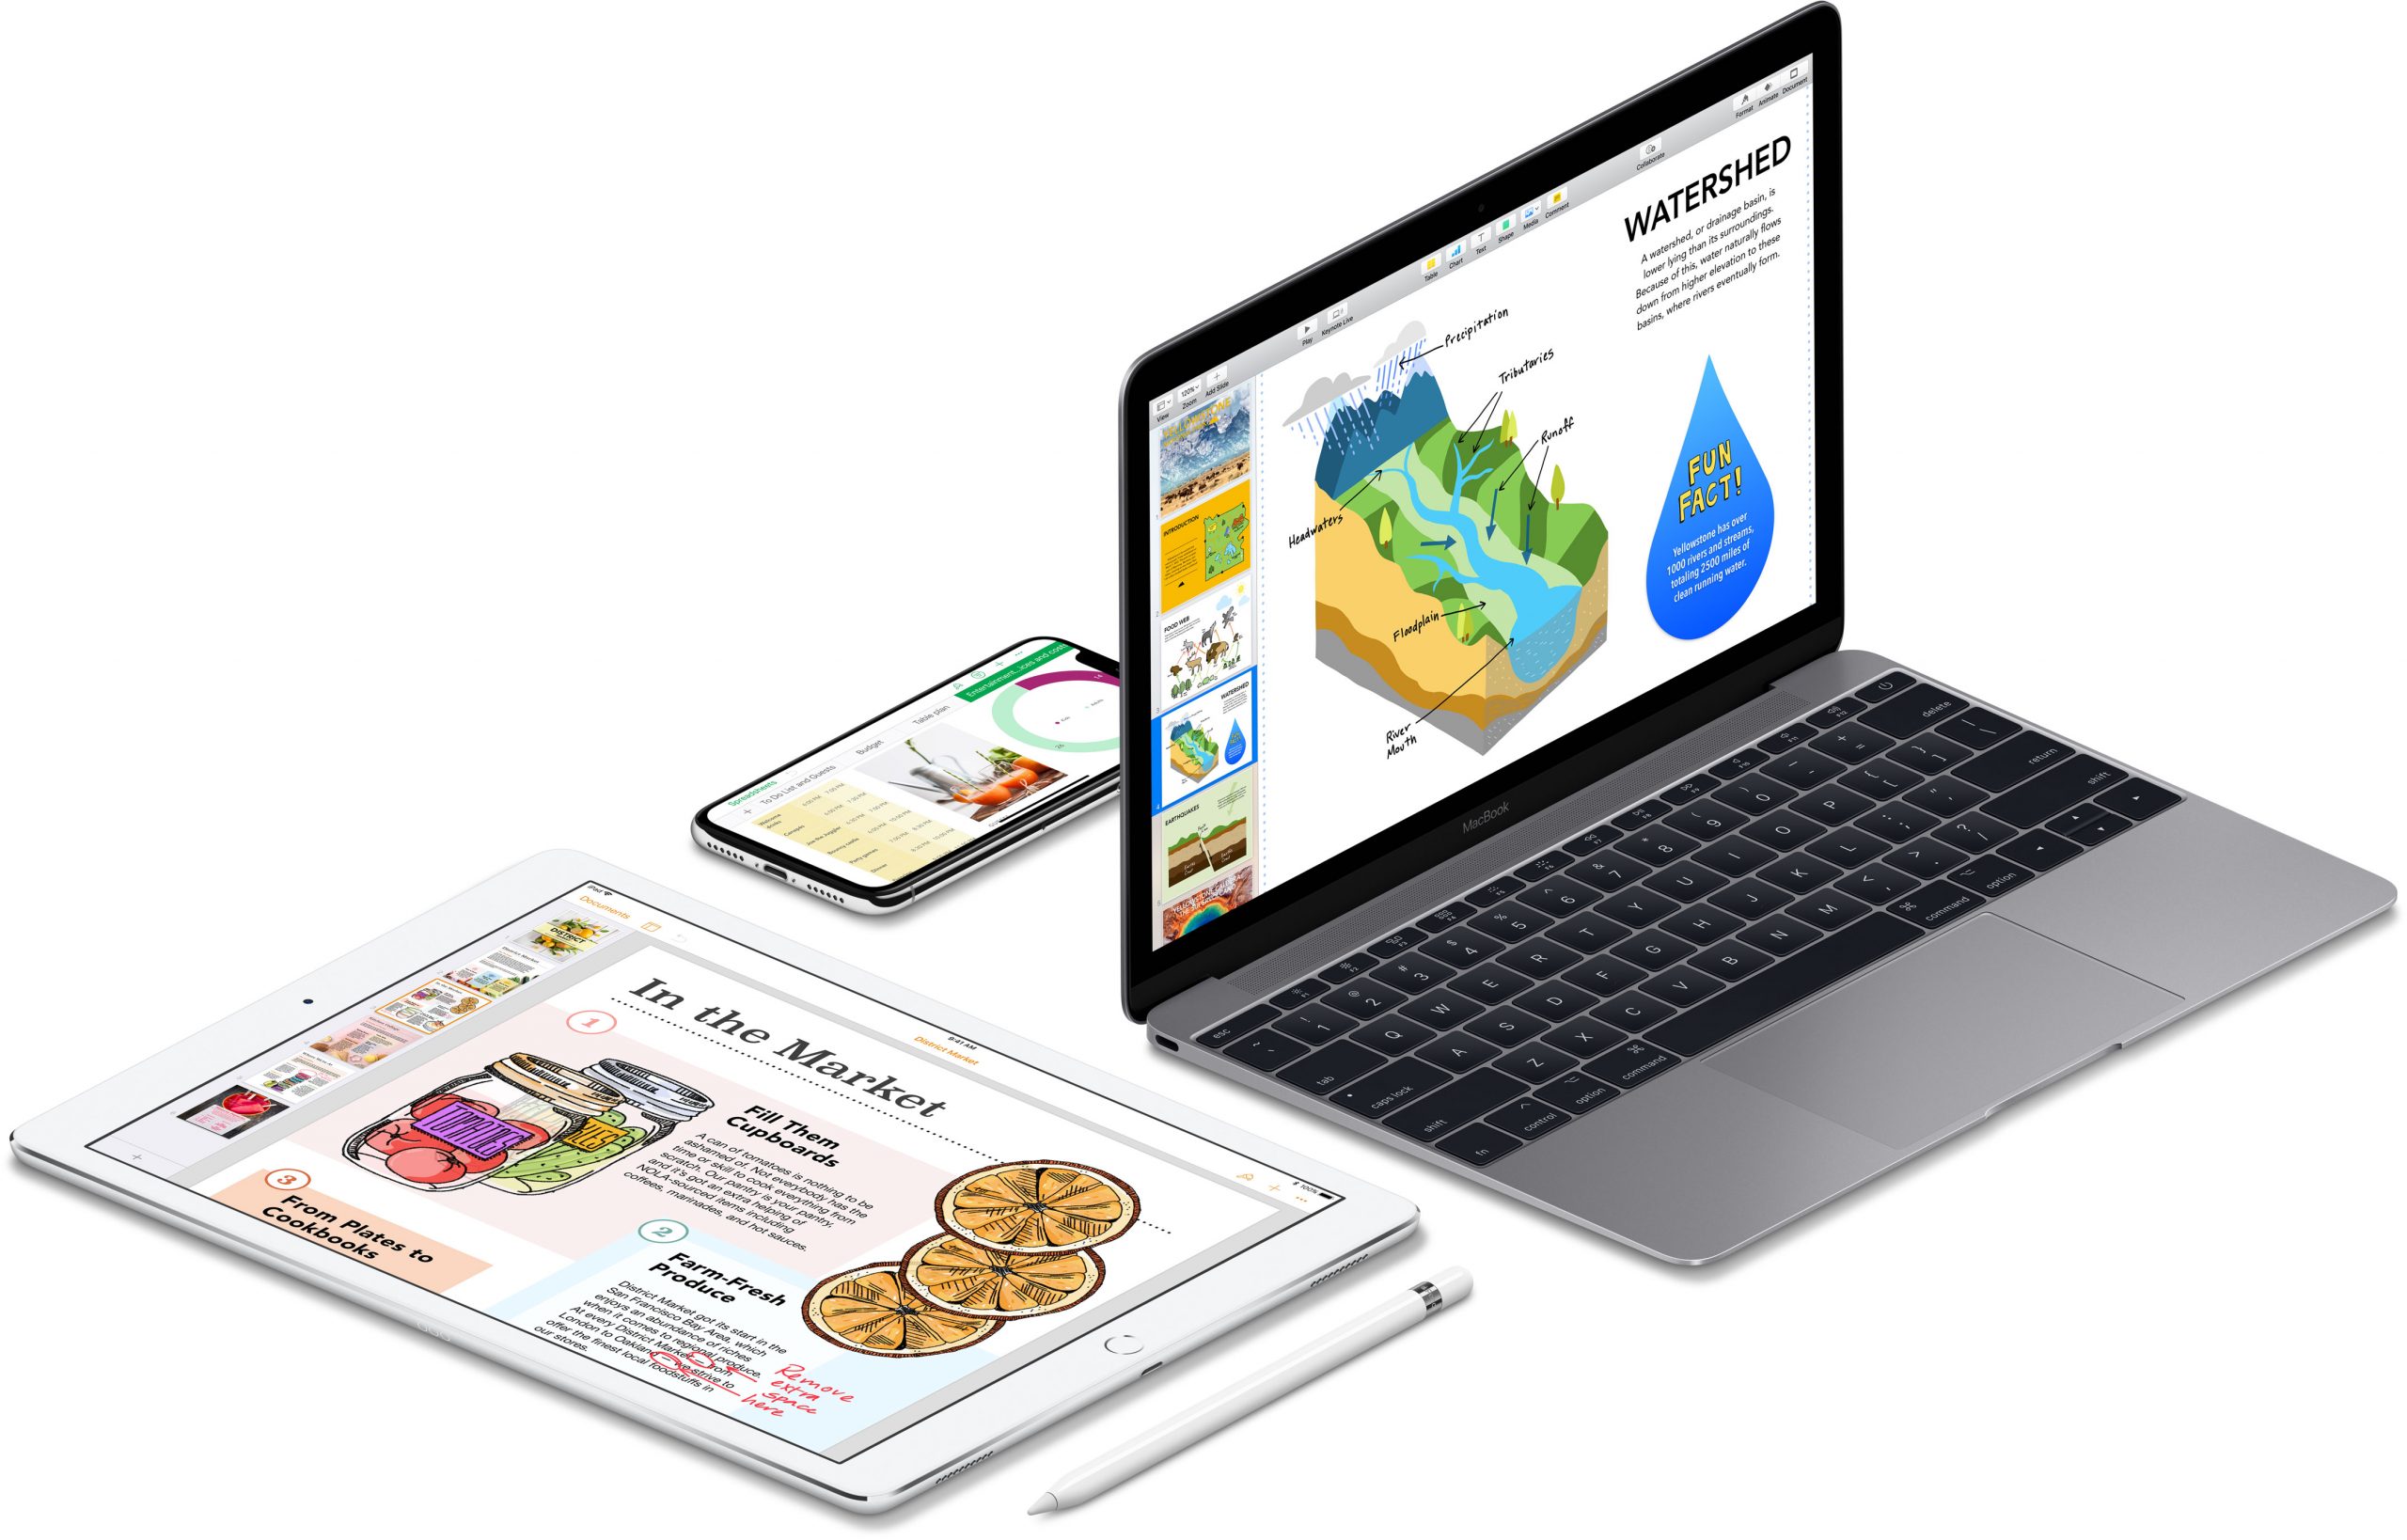 تقوم Apple بتحديث iWork suite لنظامي iOS و macOS والعديد من الميزات الجديدة